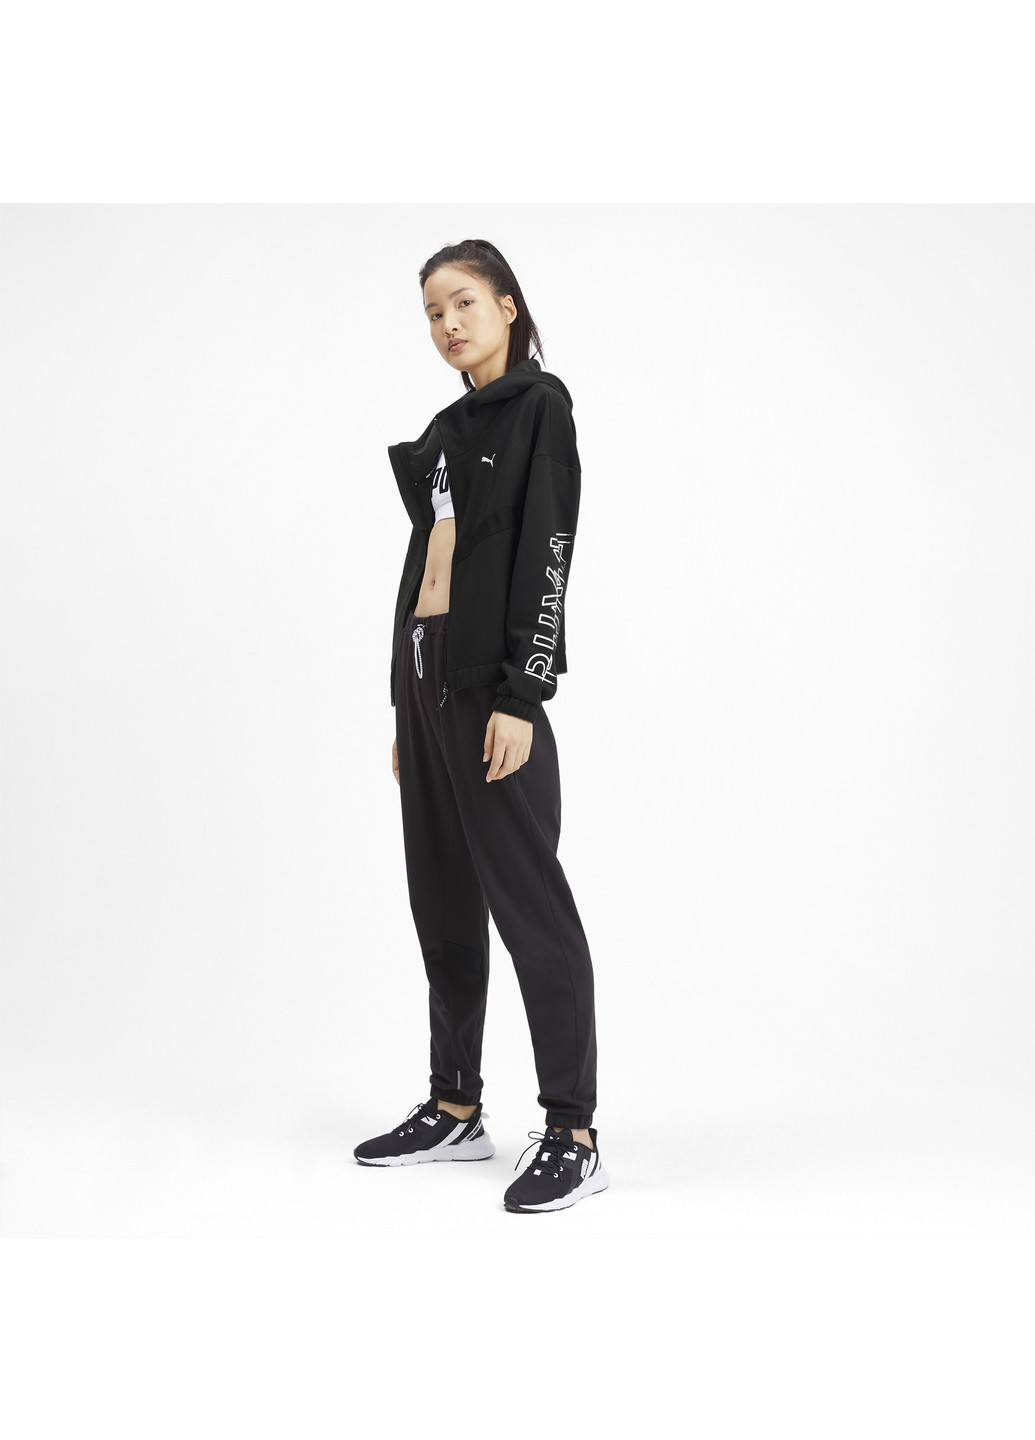 Олимпийка HIT Feel It Sweat Jacket Puma однотонная чёрная спортивная полиэстер